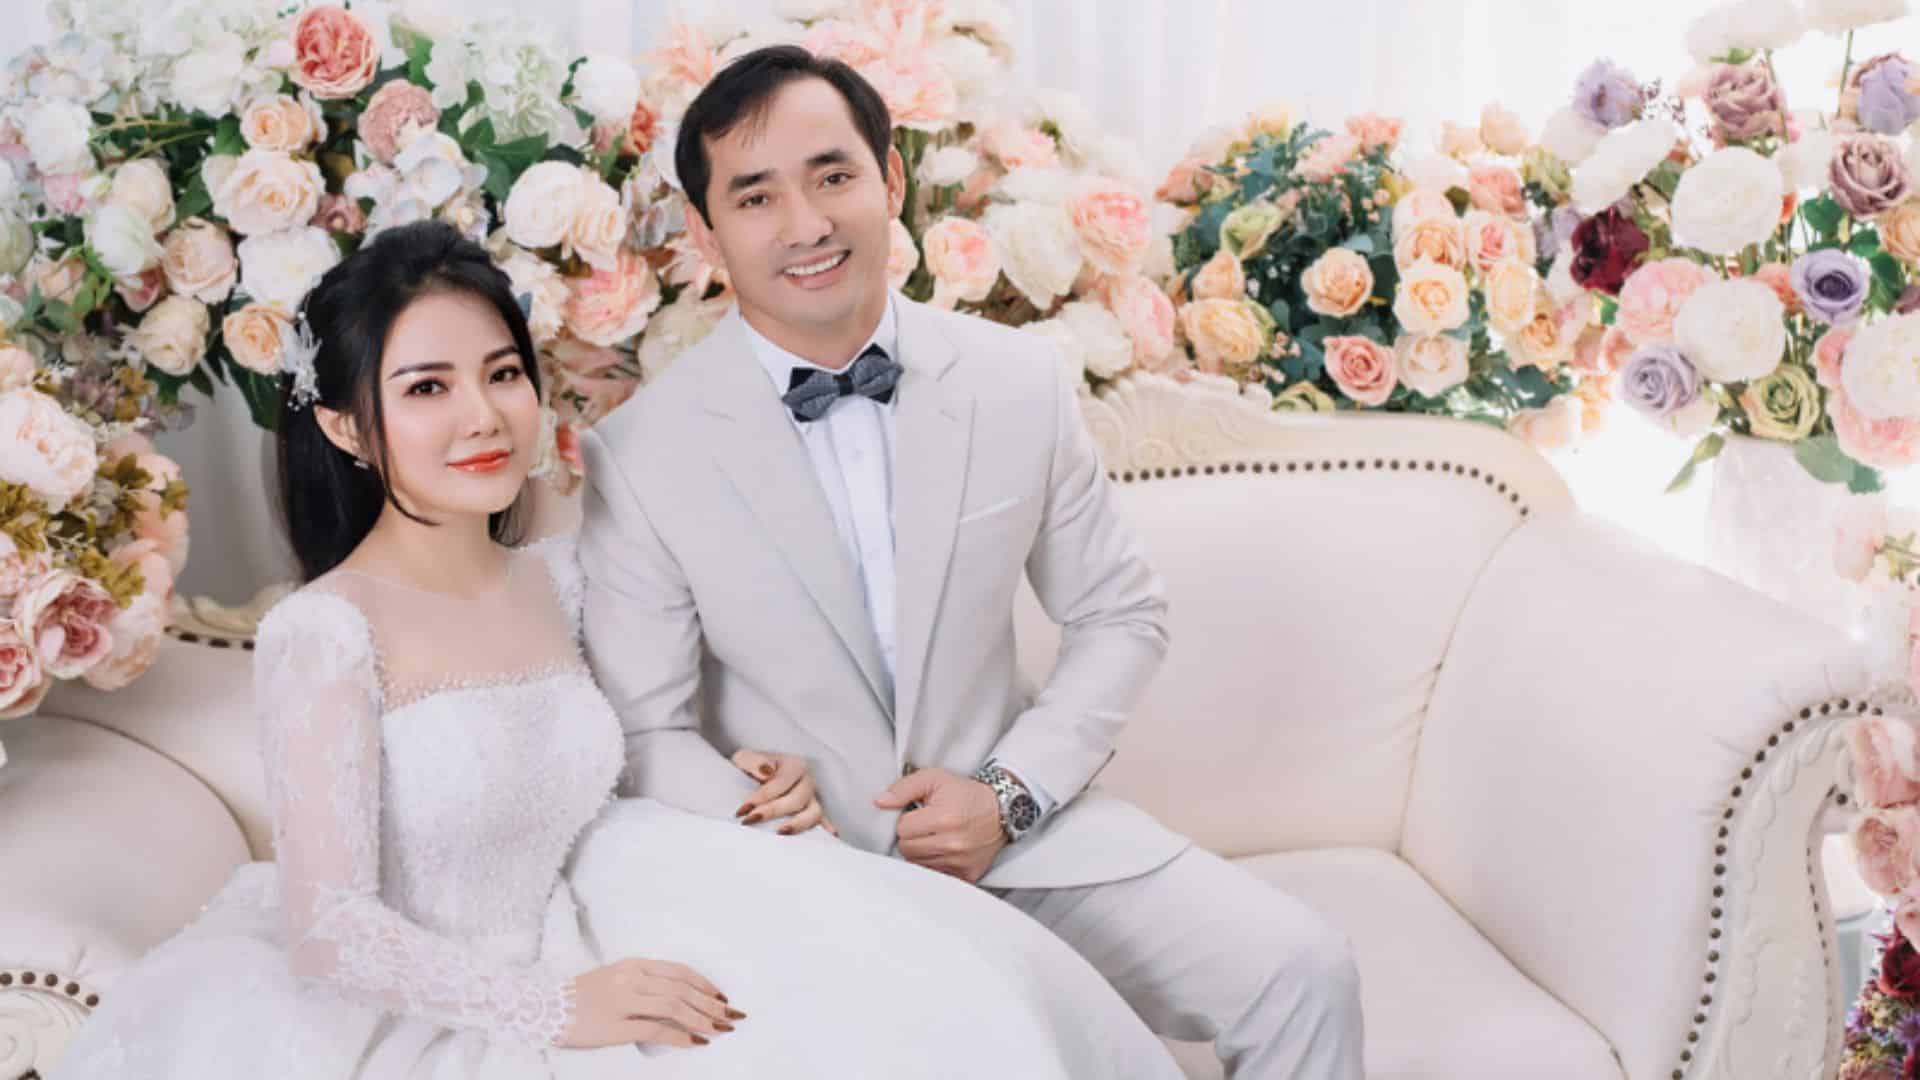 Hoa Mai Wedding - Studio chụp ảnh cưới đẹp Đà Nẵng cực xinh 